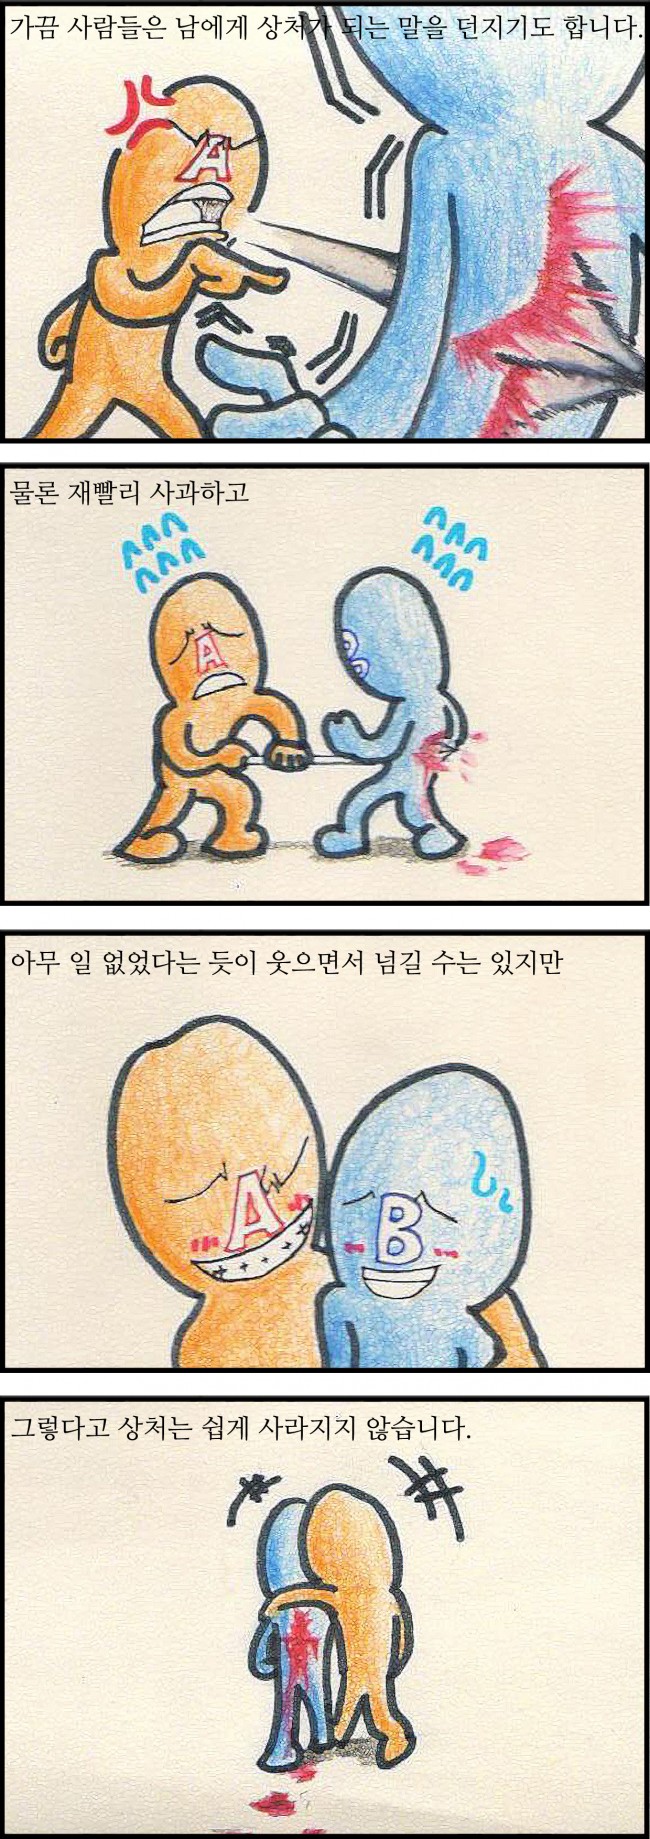 고등부 웹툰기자 이동규